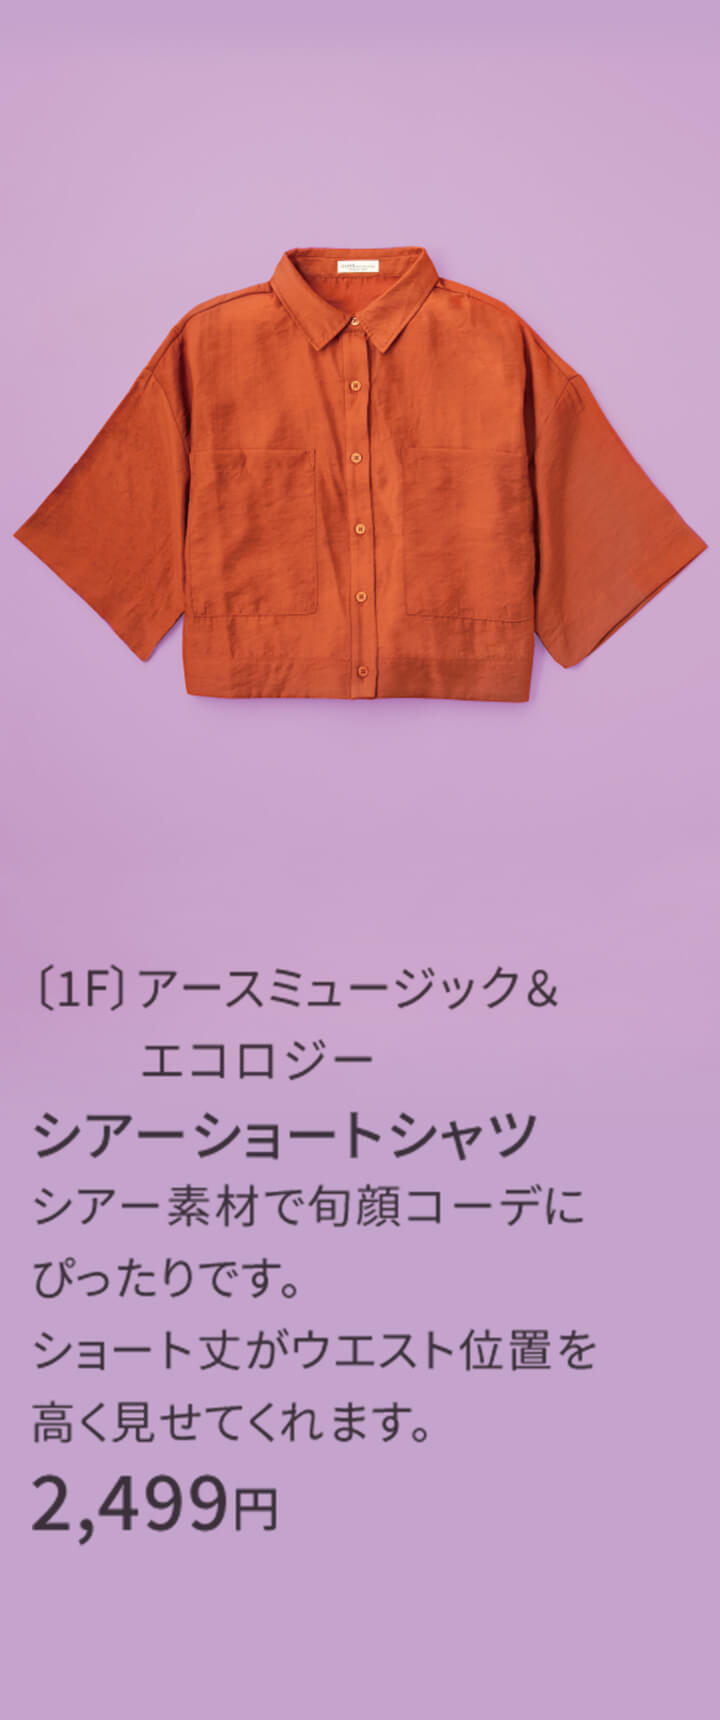 〔1F〕アースミュージック＆エコロジー シアーショートシャツ シアー素材で旬顔コーデにぴったりです。ショート丈がウエスト位置を高く見せてくれます。 2,499円